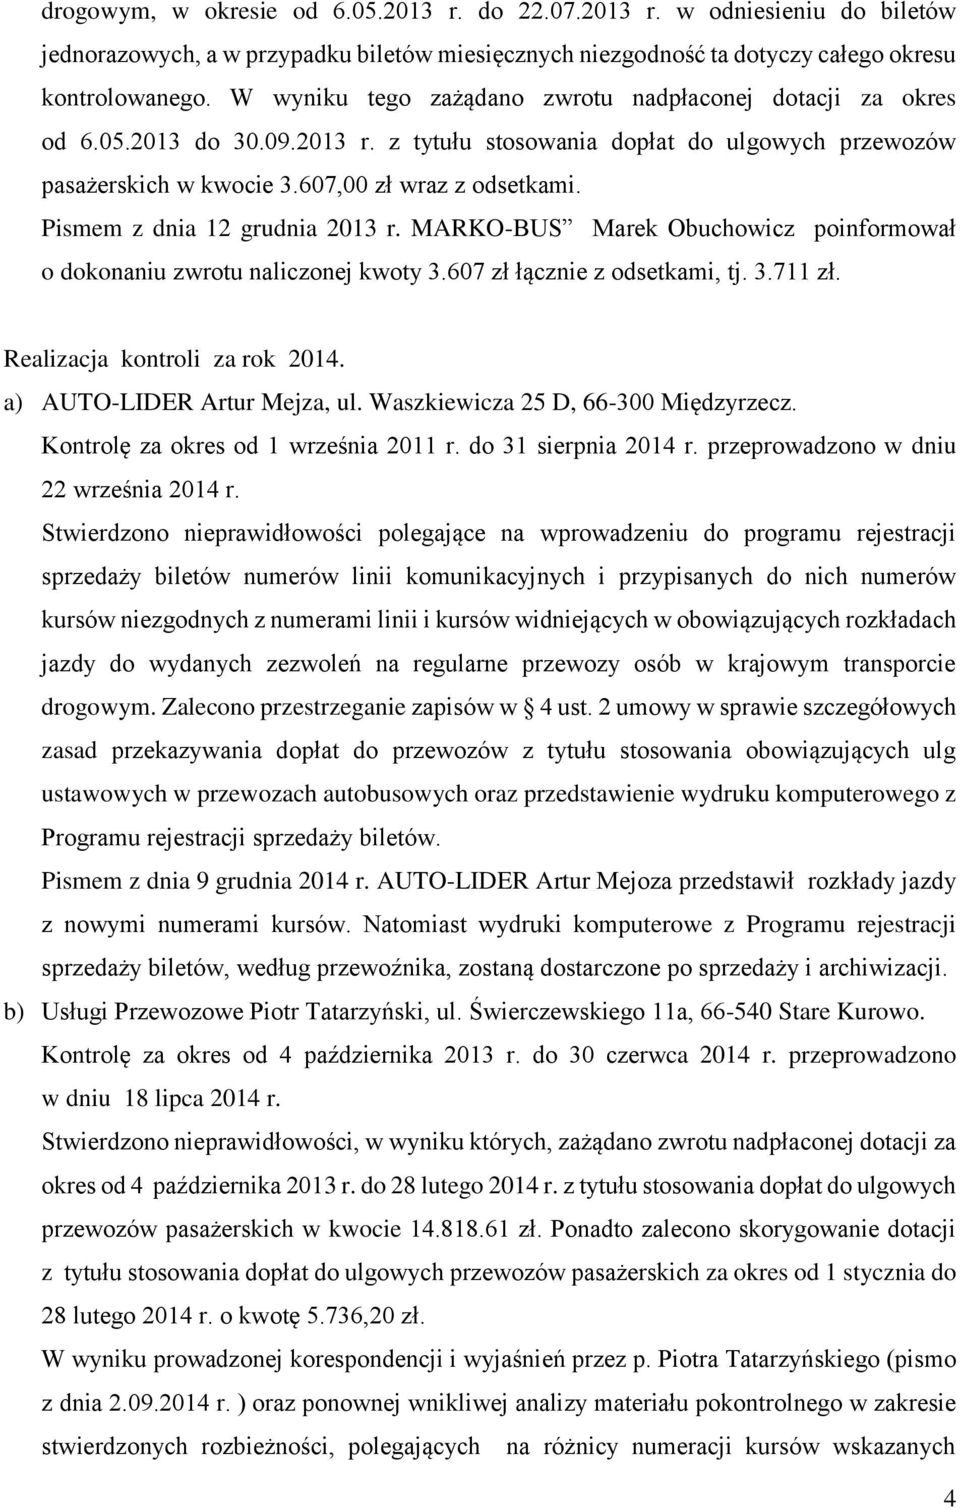 Pismem z dnia 12 grudnia 2013 r. MARKO-BUS Marek Obuchowicz poinformował o dokonaniu zwrotu naliczonej kwoty 3.607 zł łącznie z odsetkami, tj. 3.711 zł. Realizacja kontroli za rok 2014.